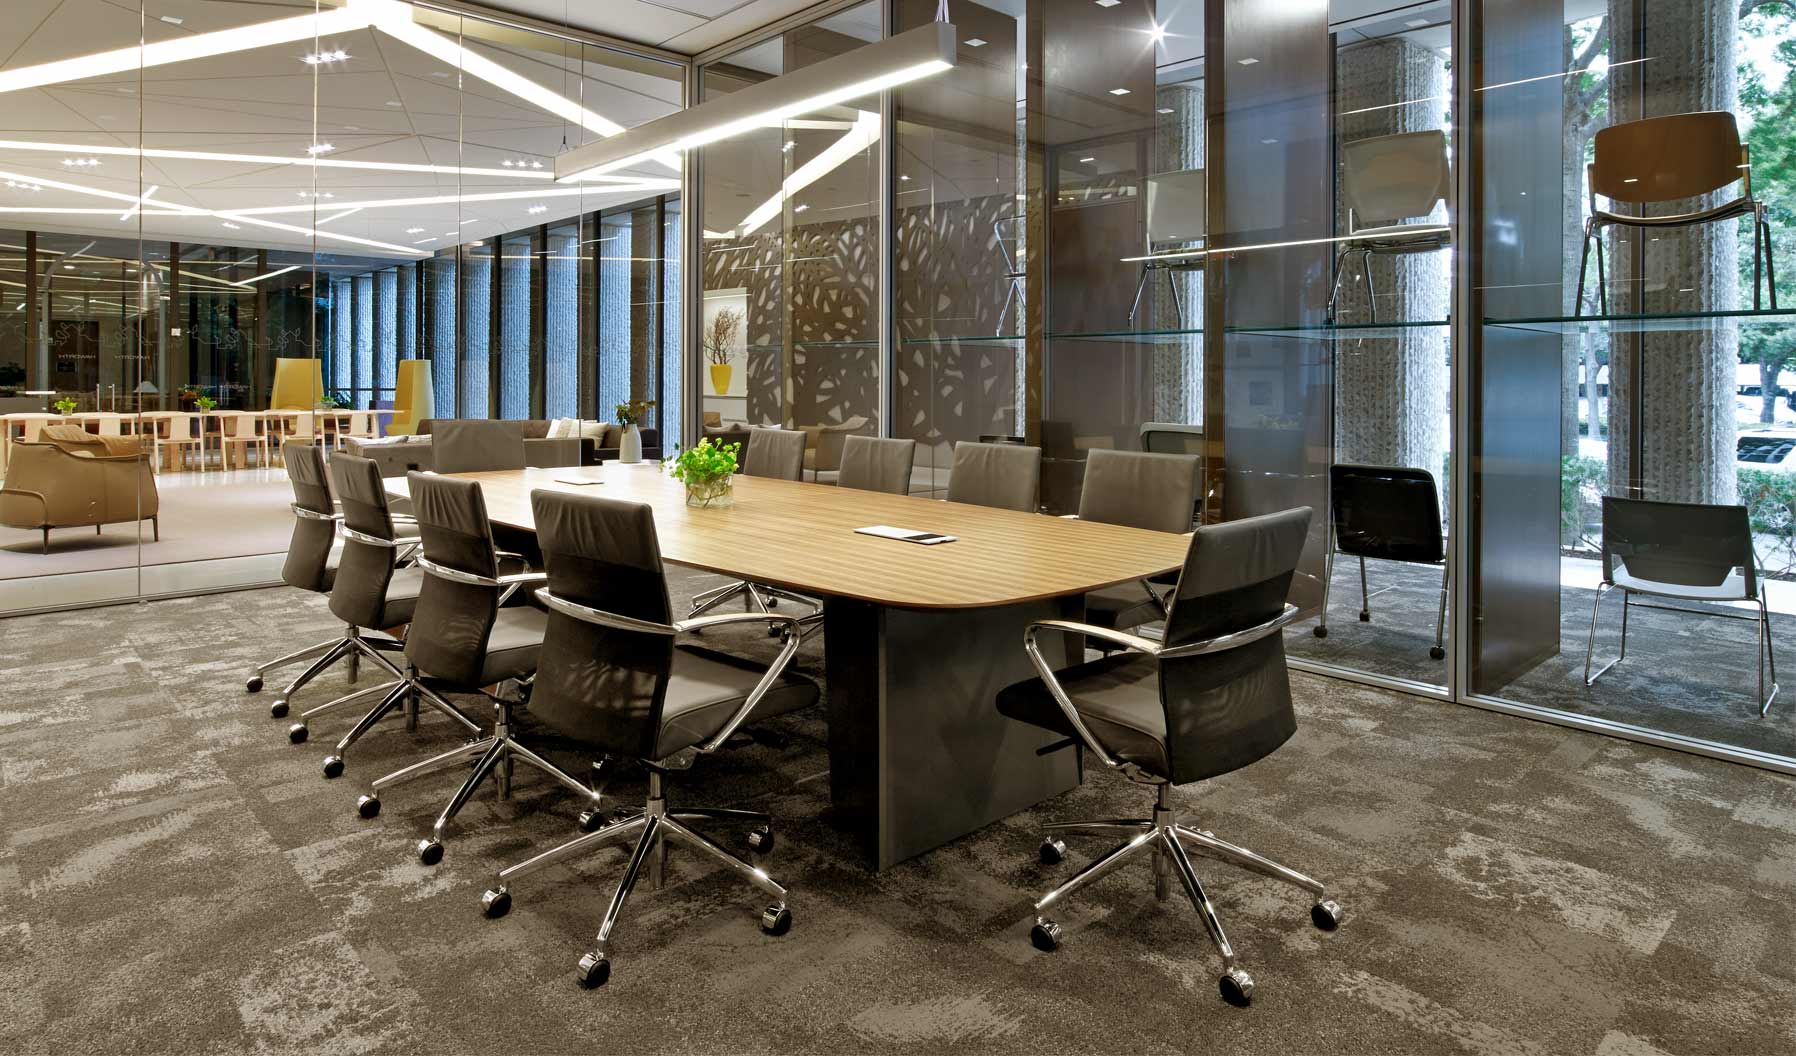 このミーティングスペースは、オフィス内のコラボレーションはもちろん、温かみのある心地よい文化をサポートします。側に置いたラウンジチェアと天井から床まで椅子類を並べたディスプレイが、空間に注ぐ美しい自然光を受けて更なるレイヤーを生み出しています。